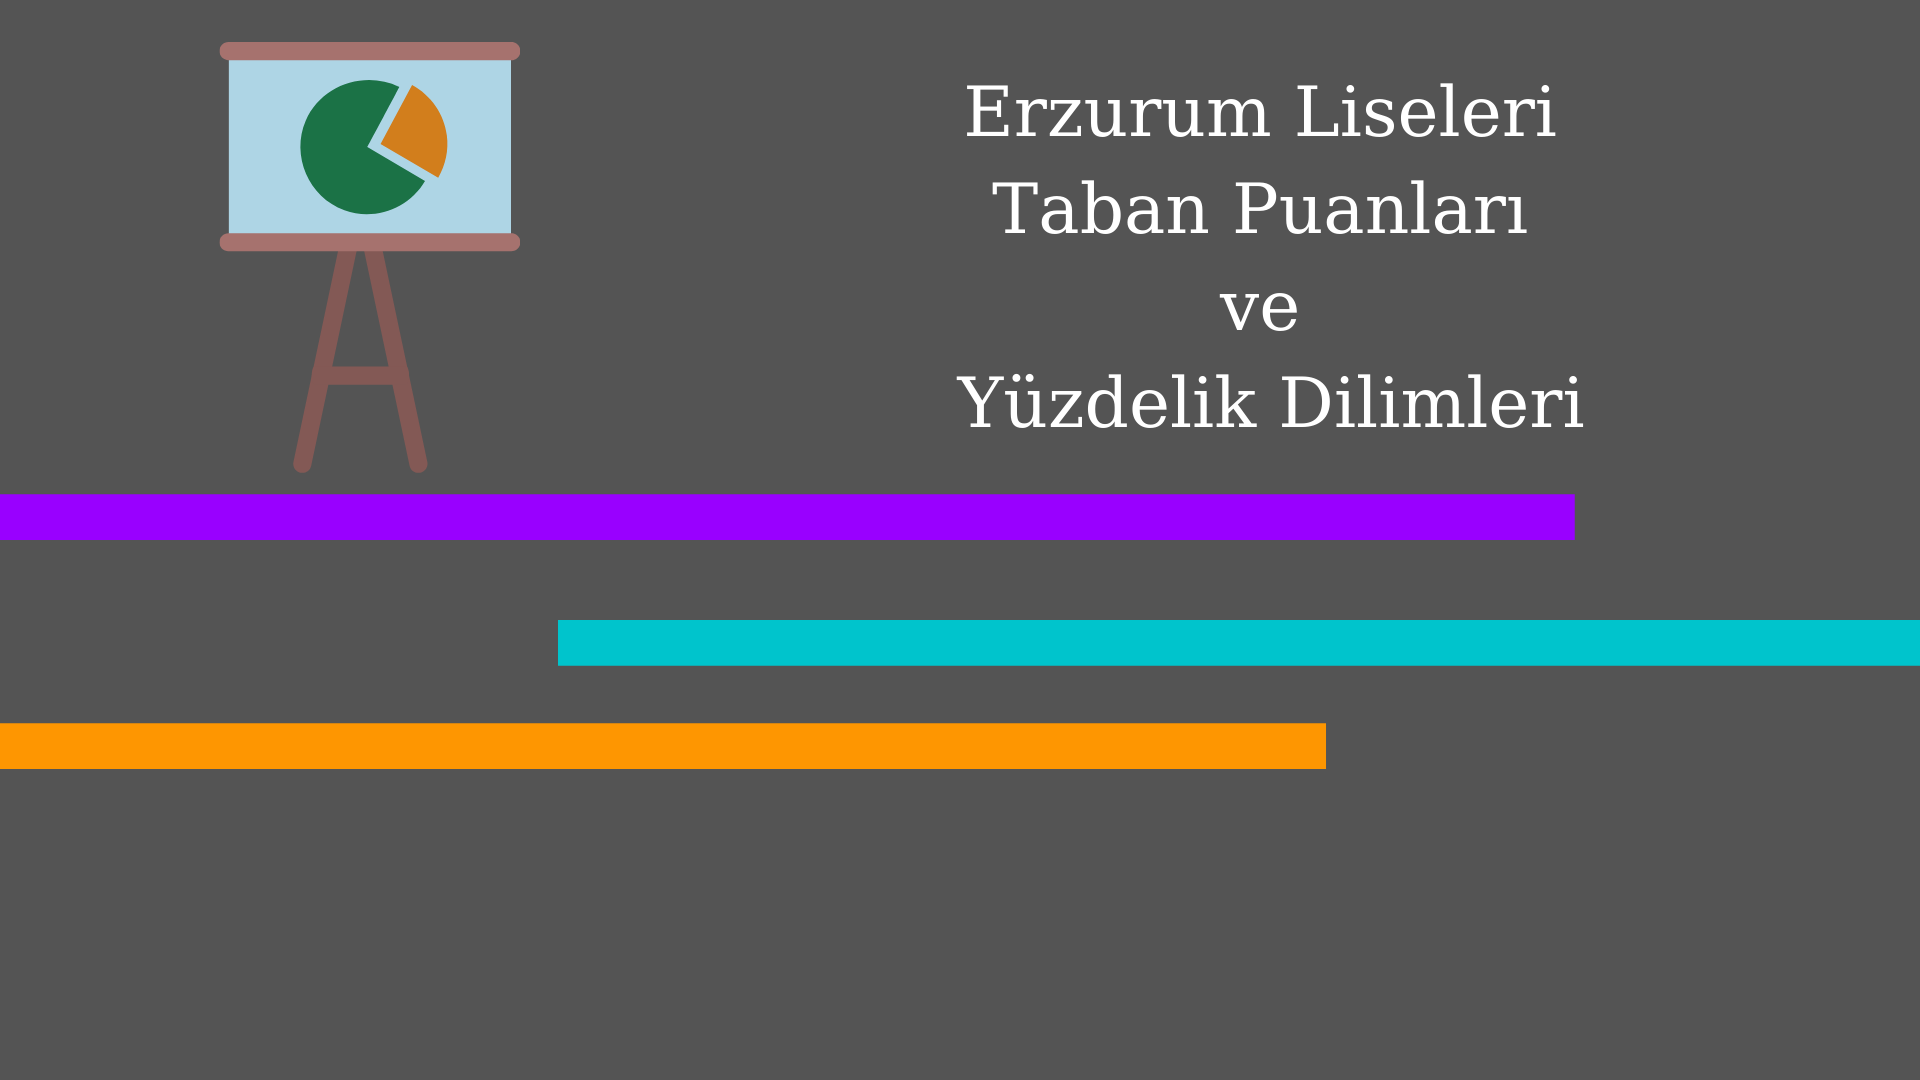 Erzurum Liseleri Taban Puanları ve Yüzdelik Dilimleri 2021